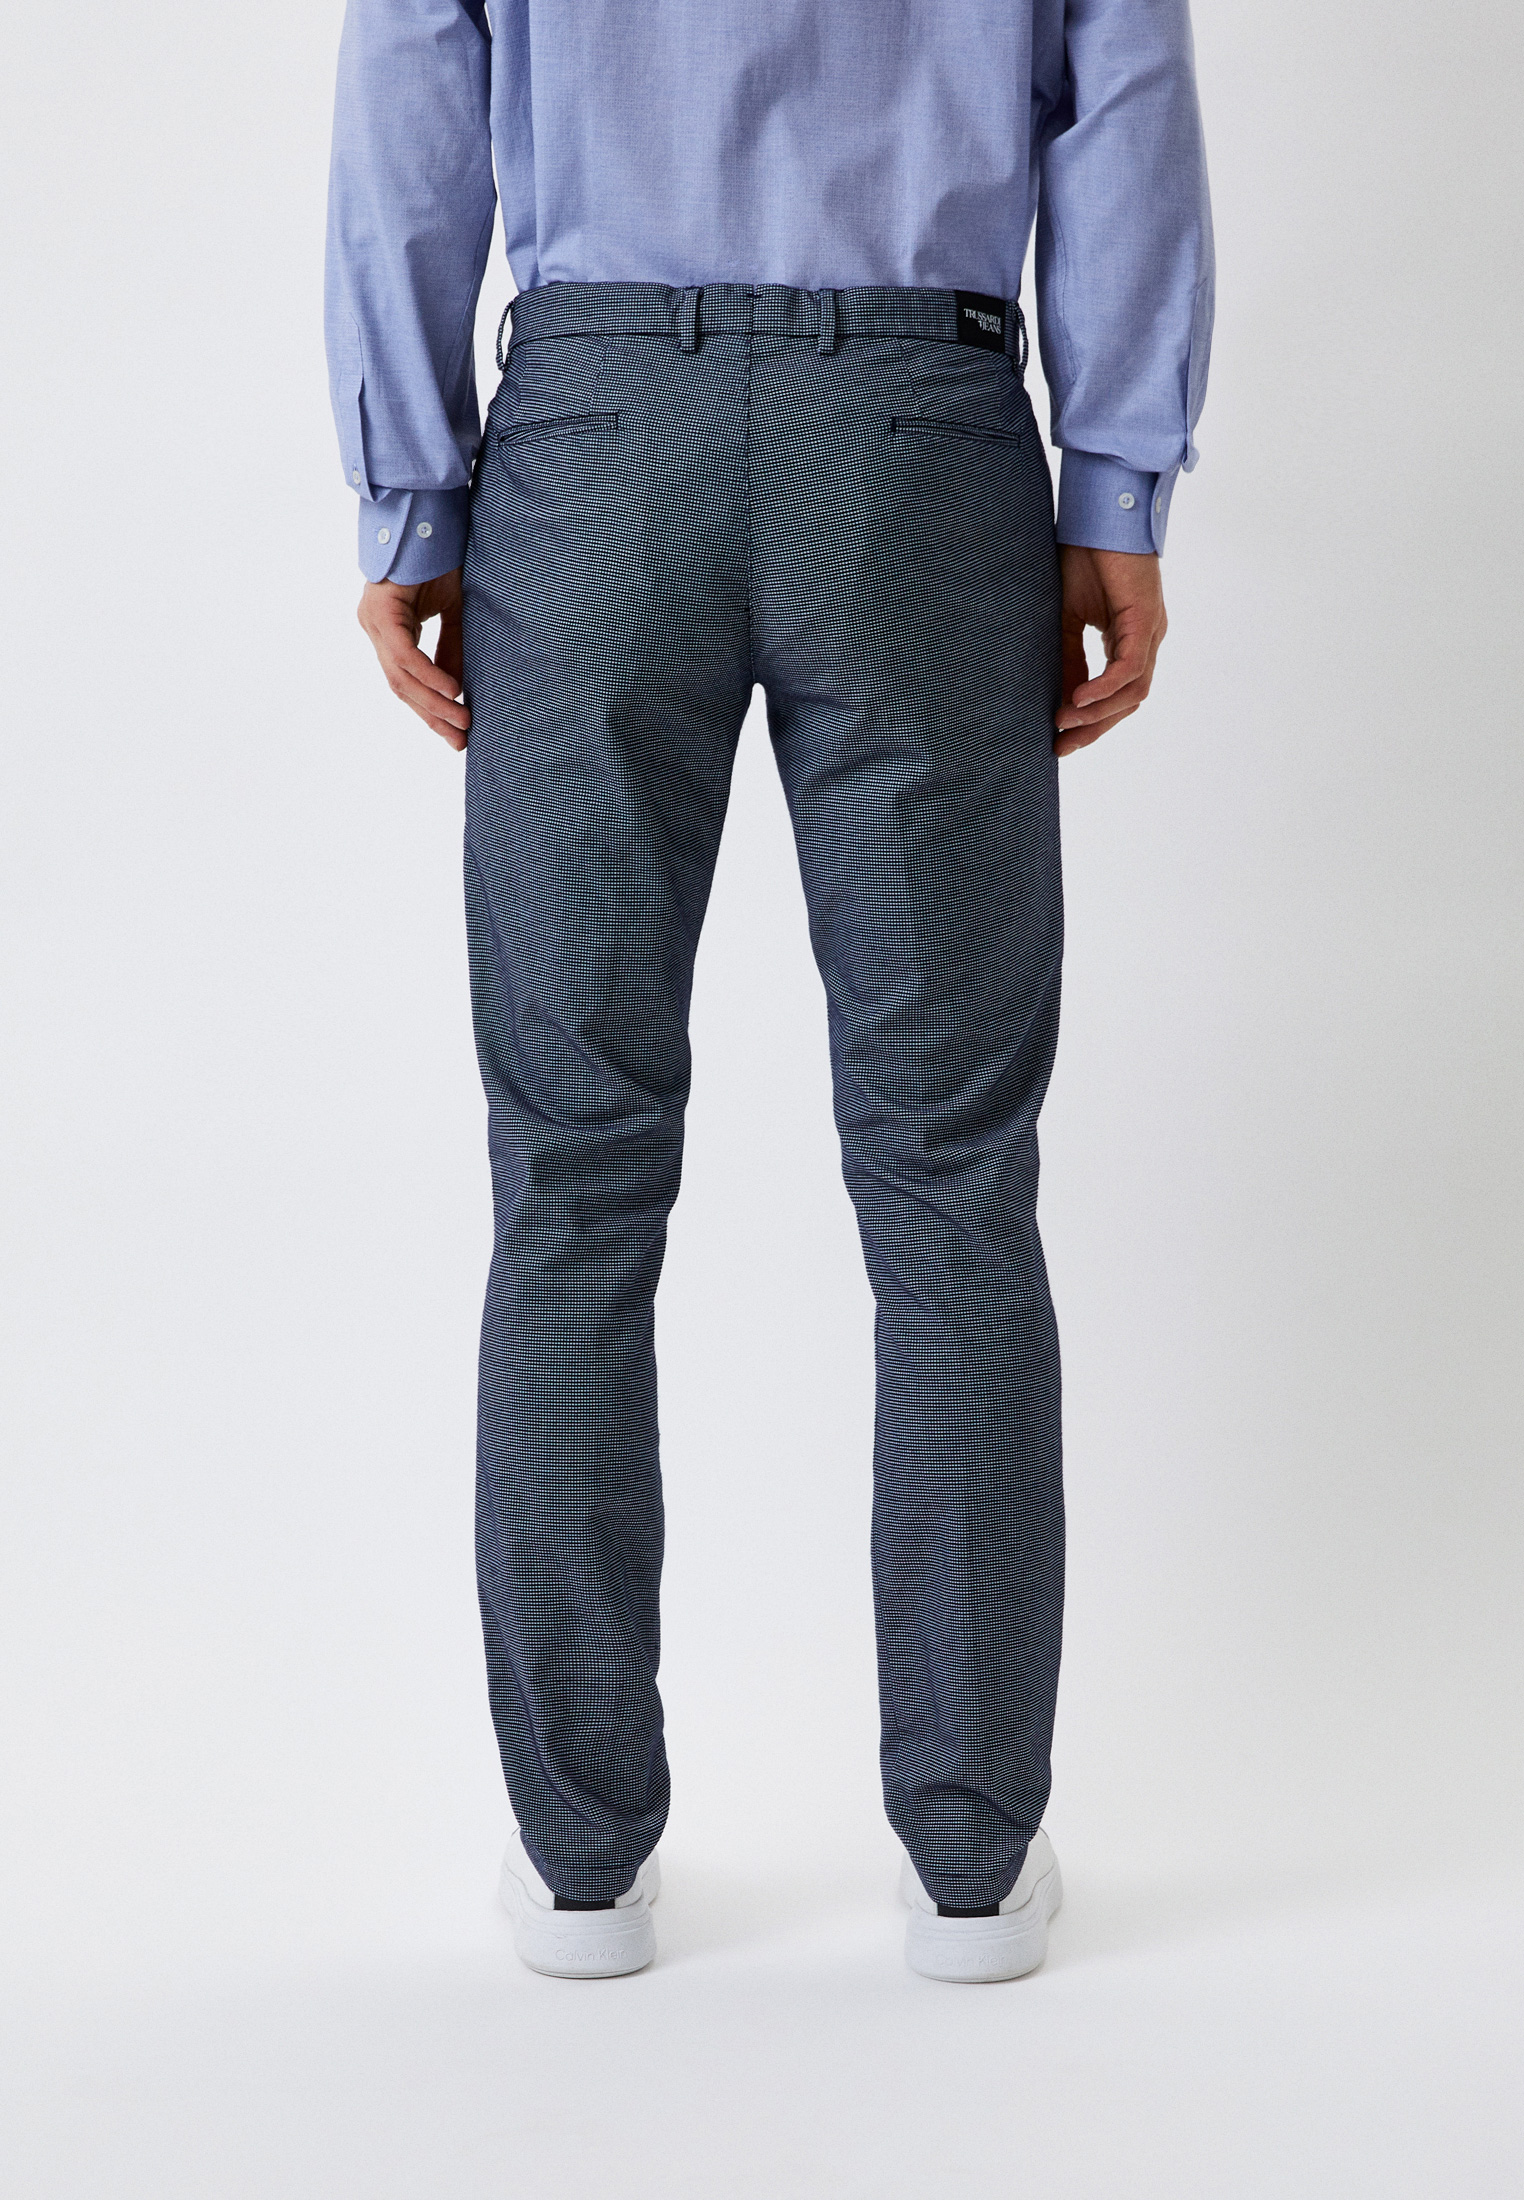 Мужские повседневные брюки Trussardi (Труссарди) 52P00000-1T002335-H-001: изображение 3